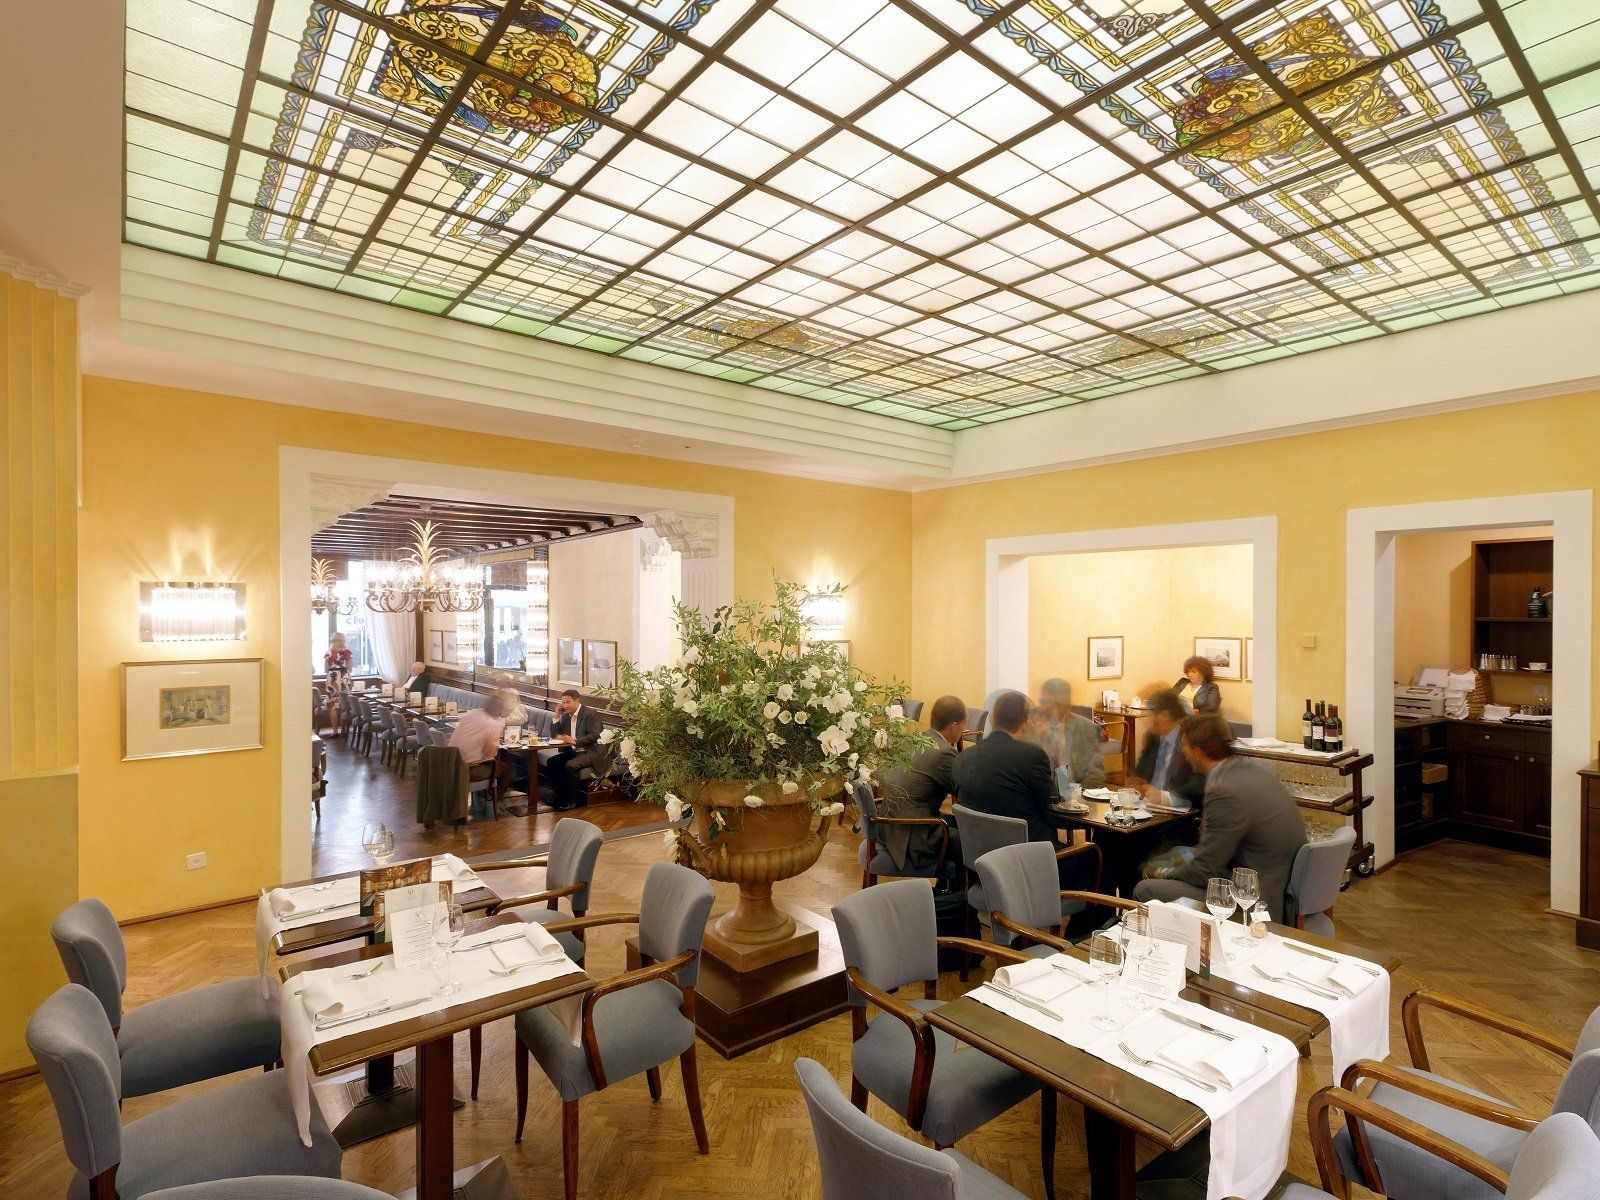 Das Restaurant Grand Café Al Porto mit der schönen Liberty-Glasdecke